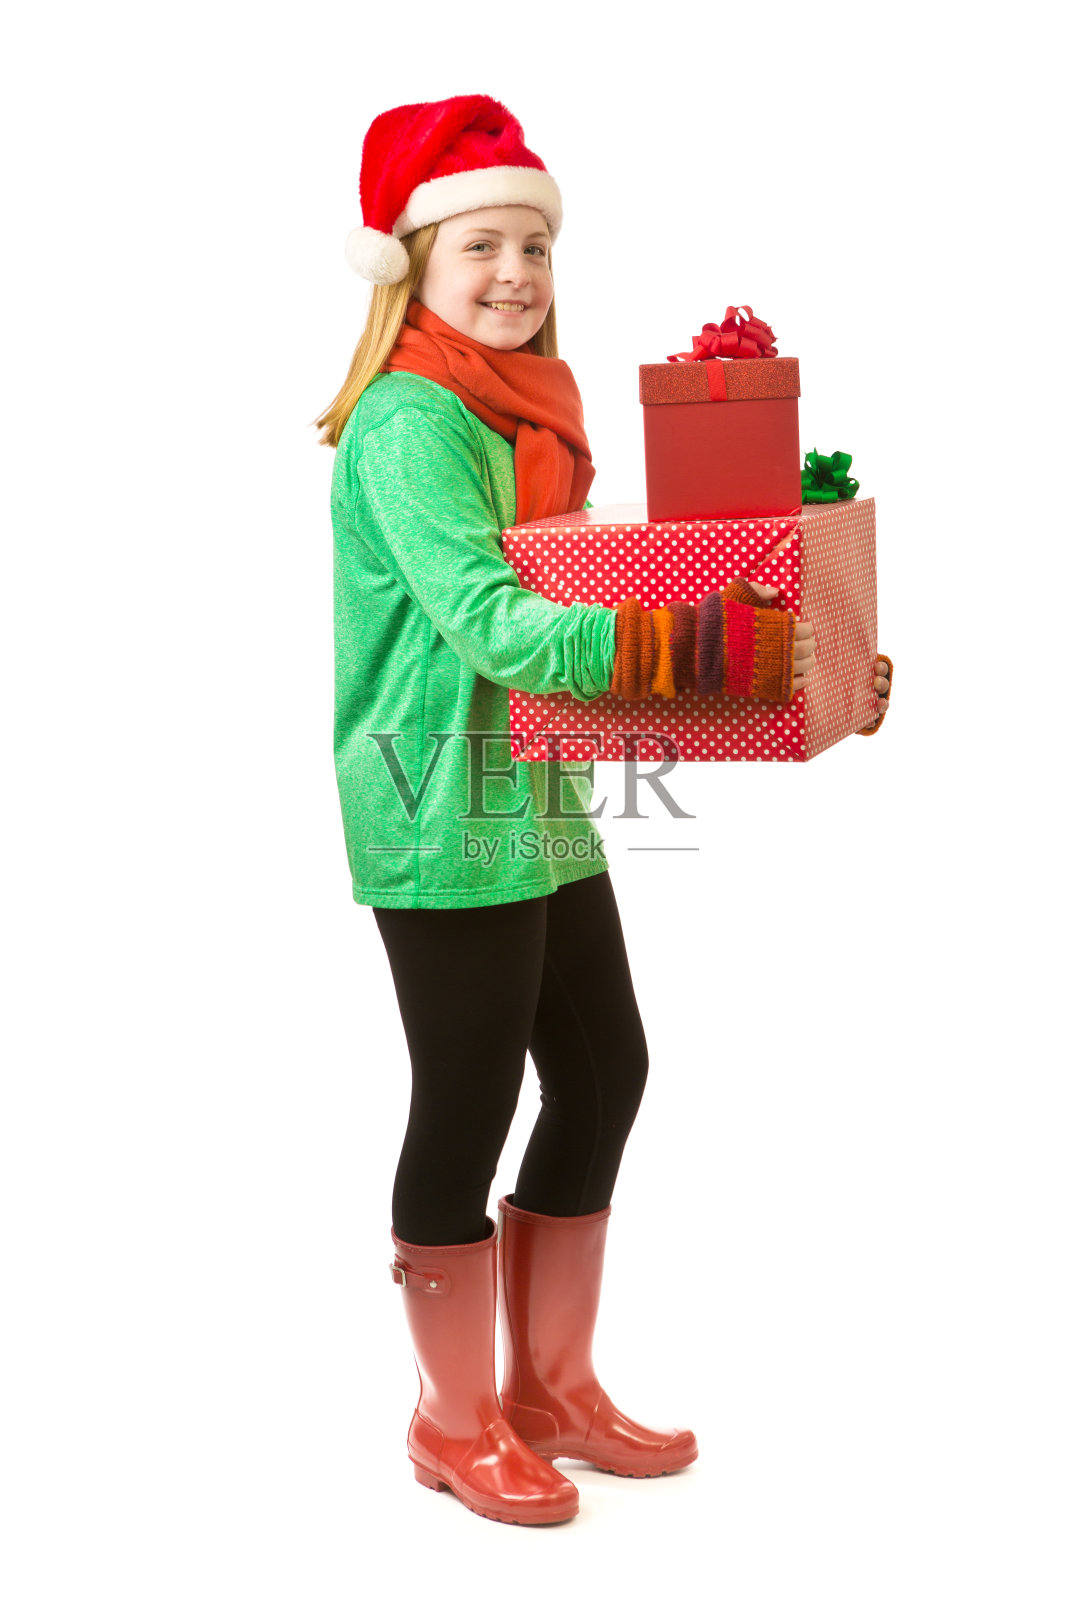 少女与圣诞礼物的白色背景照片摄影图片